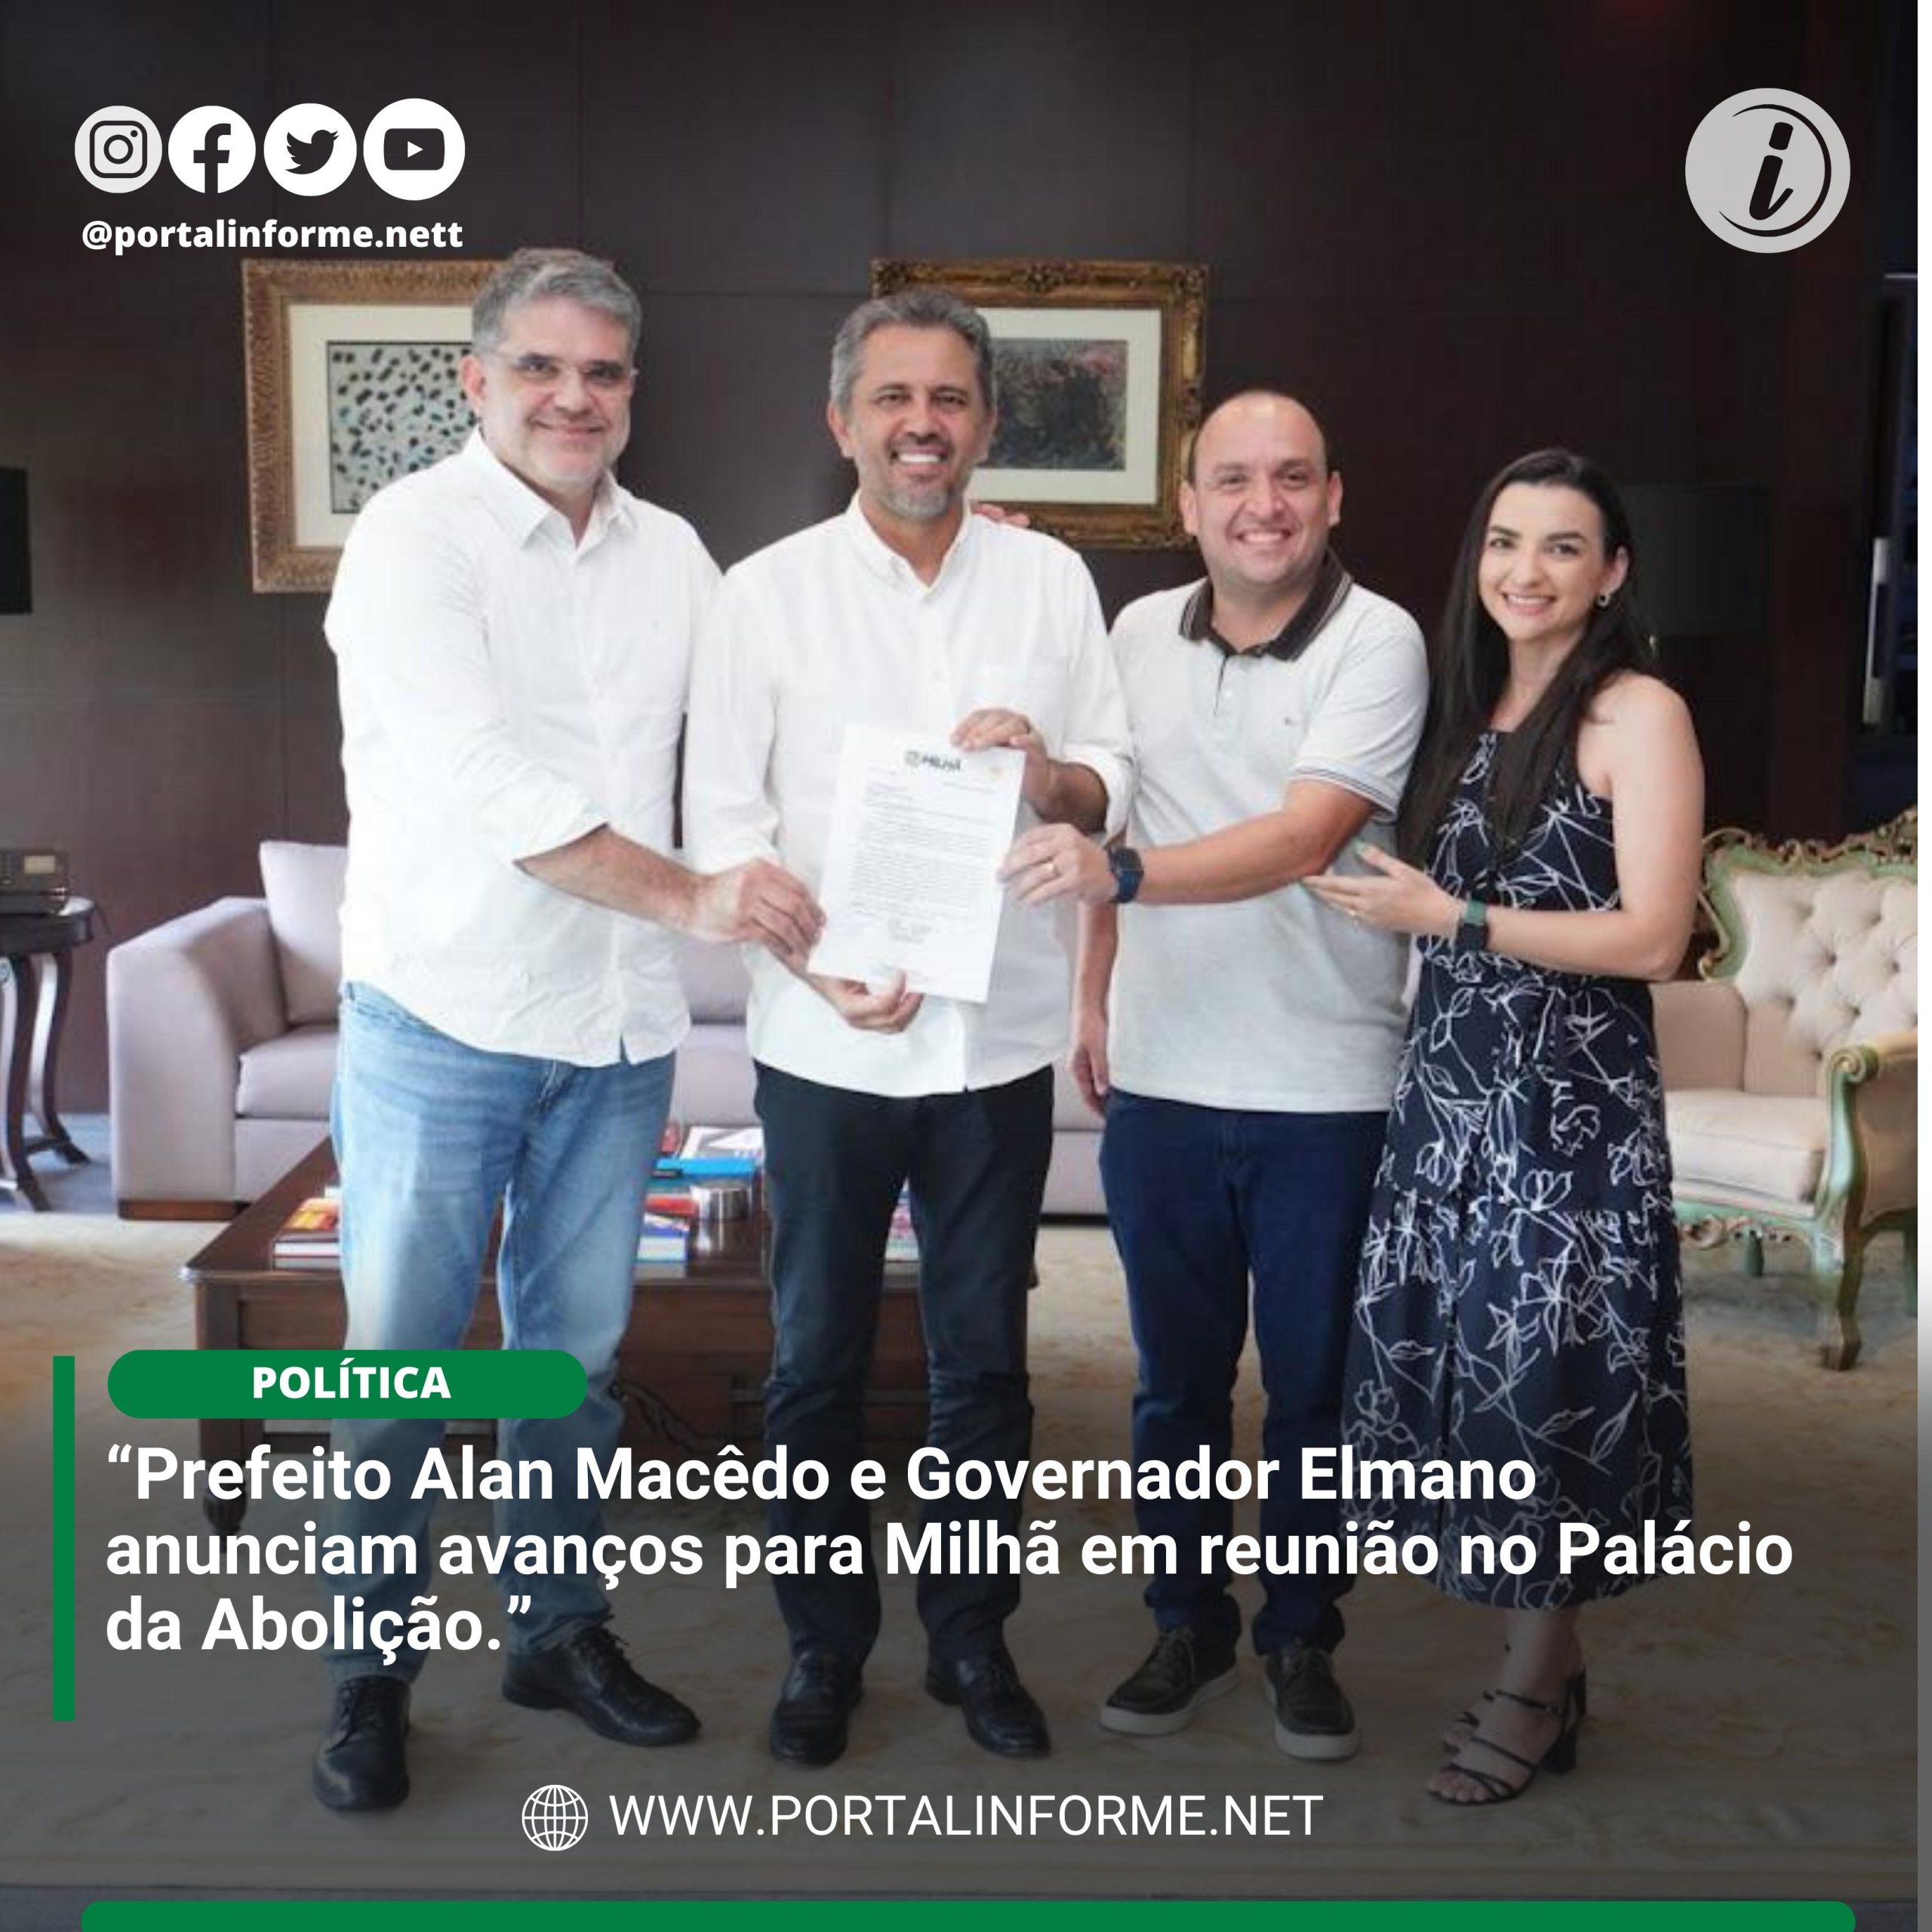 Prefeito-Alan-Macedo-e-Governador-Elmano-anunciam-avancos-para-Milha-em-reuniao-no-Palacio-da-Abolicao-scaled.jpg